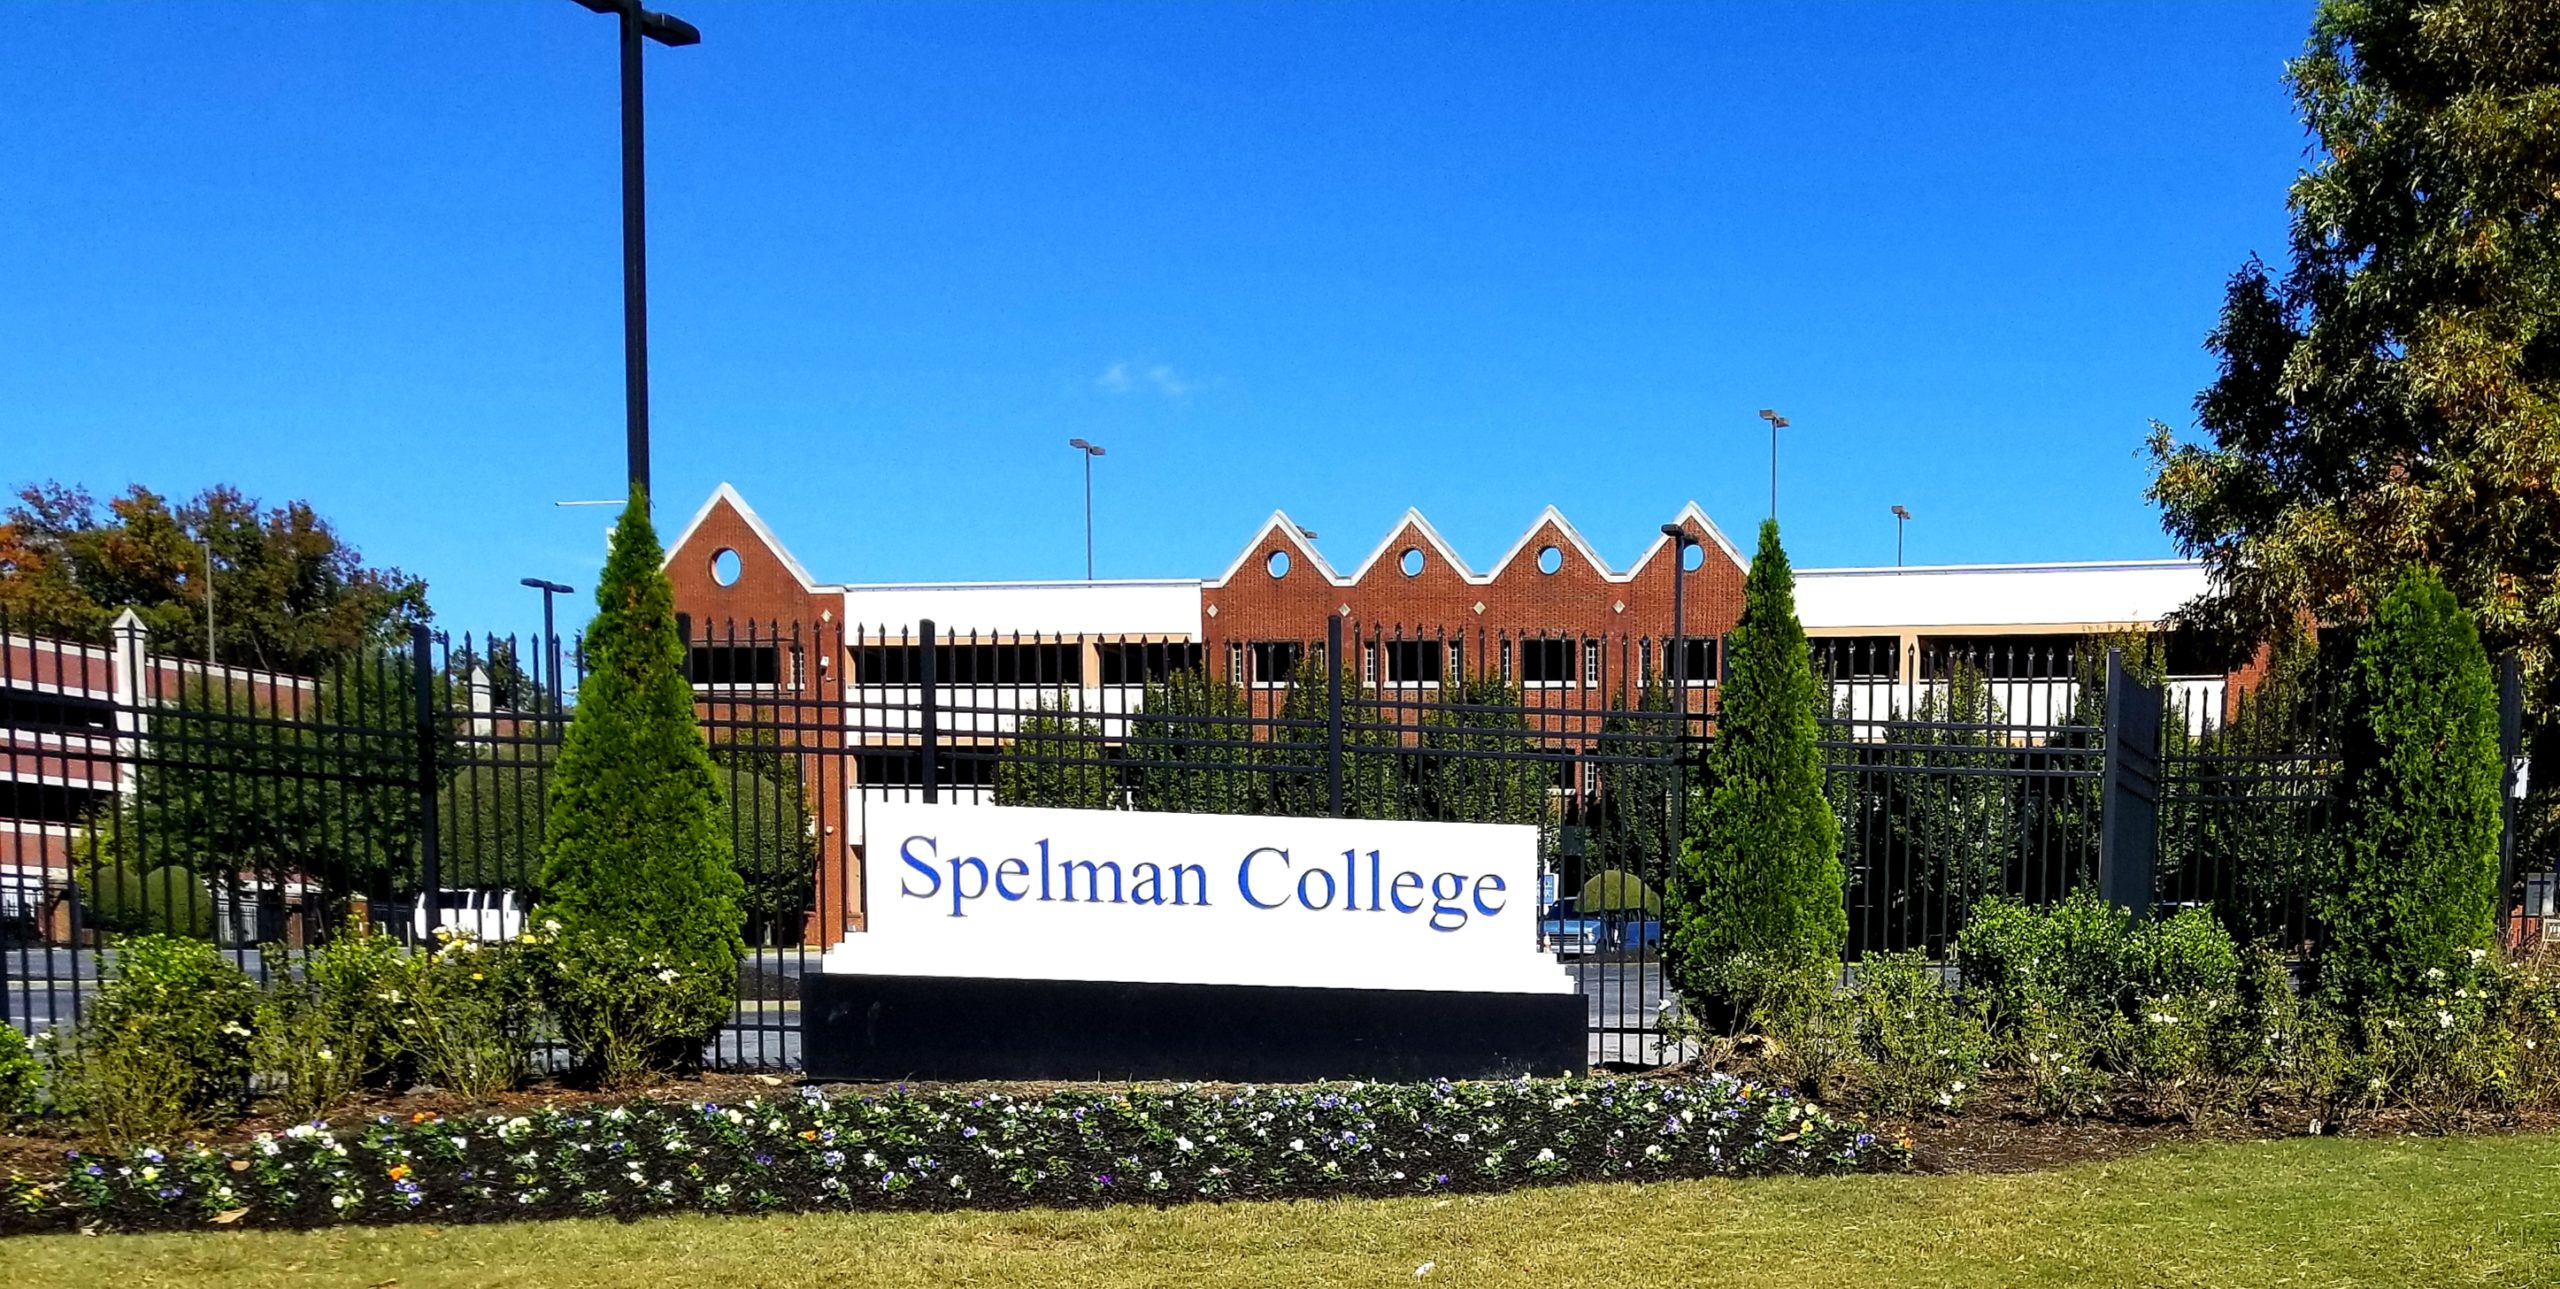 A-Spelman-College-é-uma-das-Universidades-historicamente-negras-dos-EUA